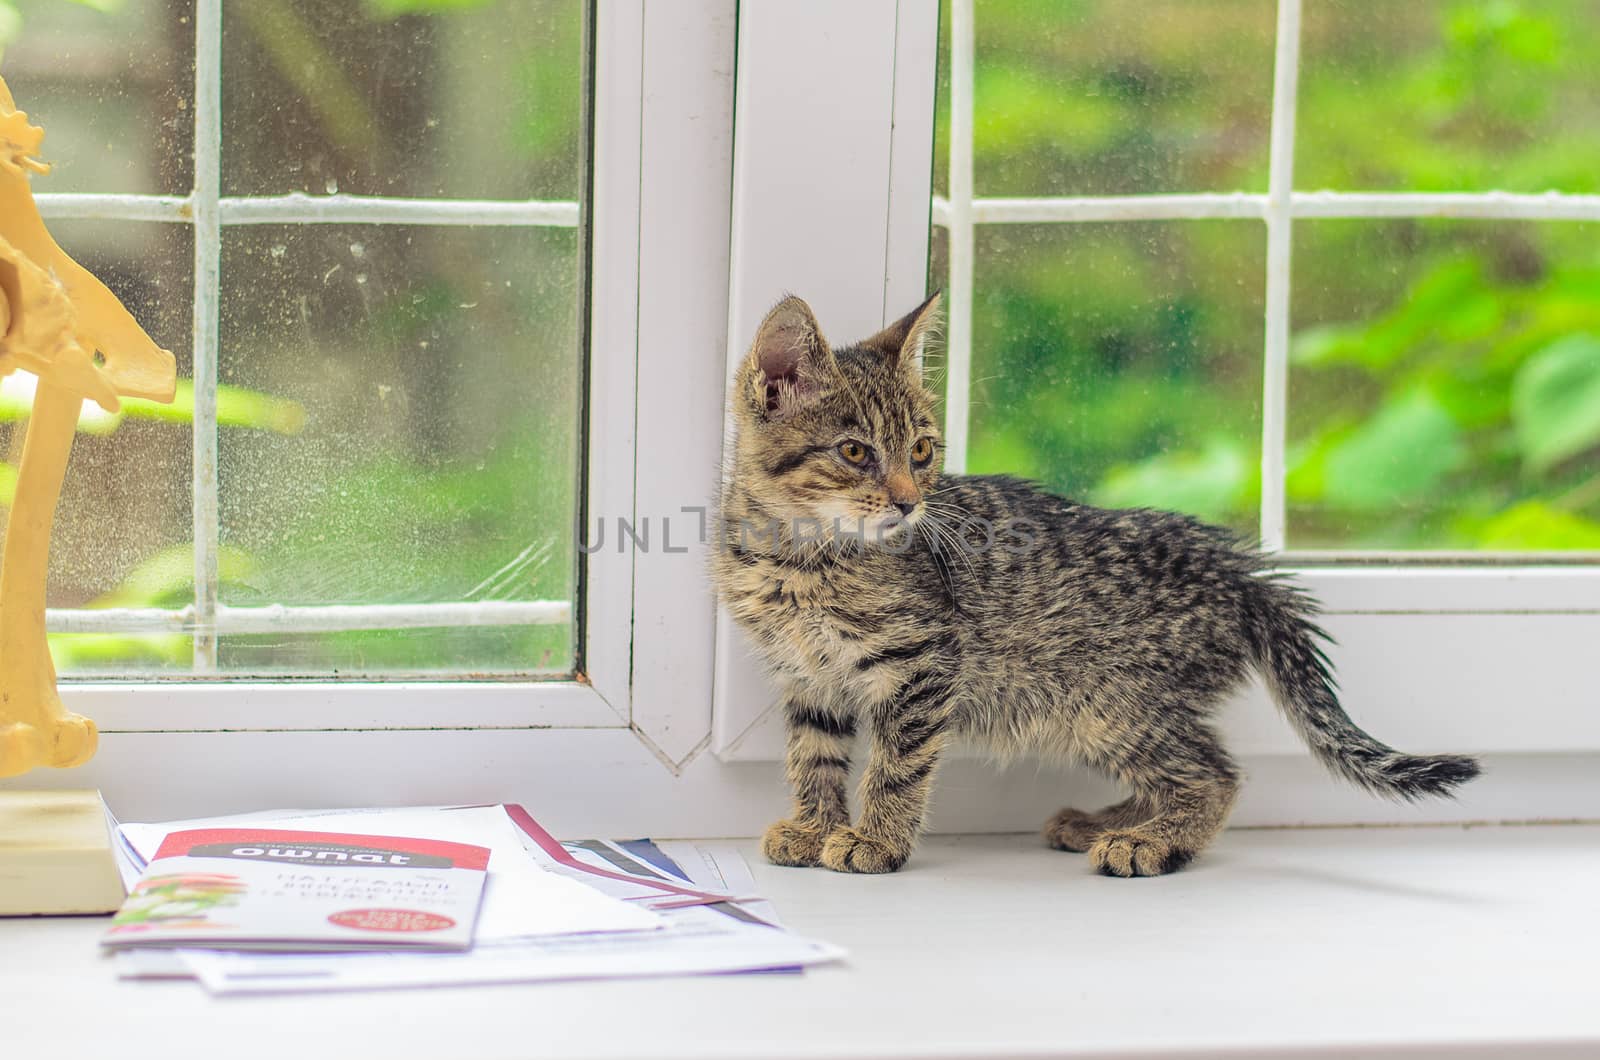 Little gray kitten at the window